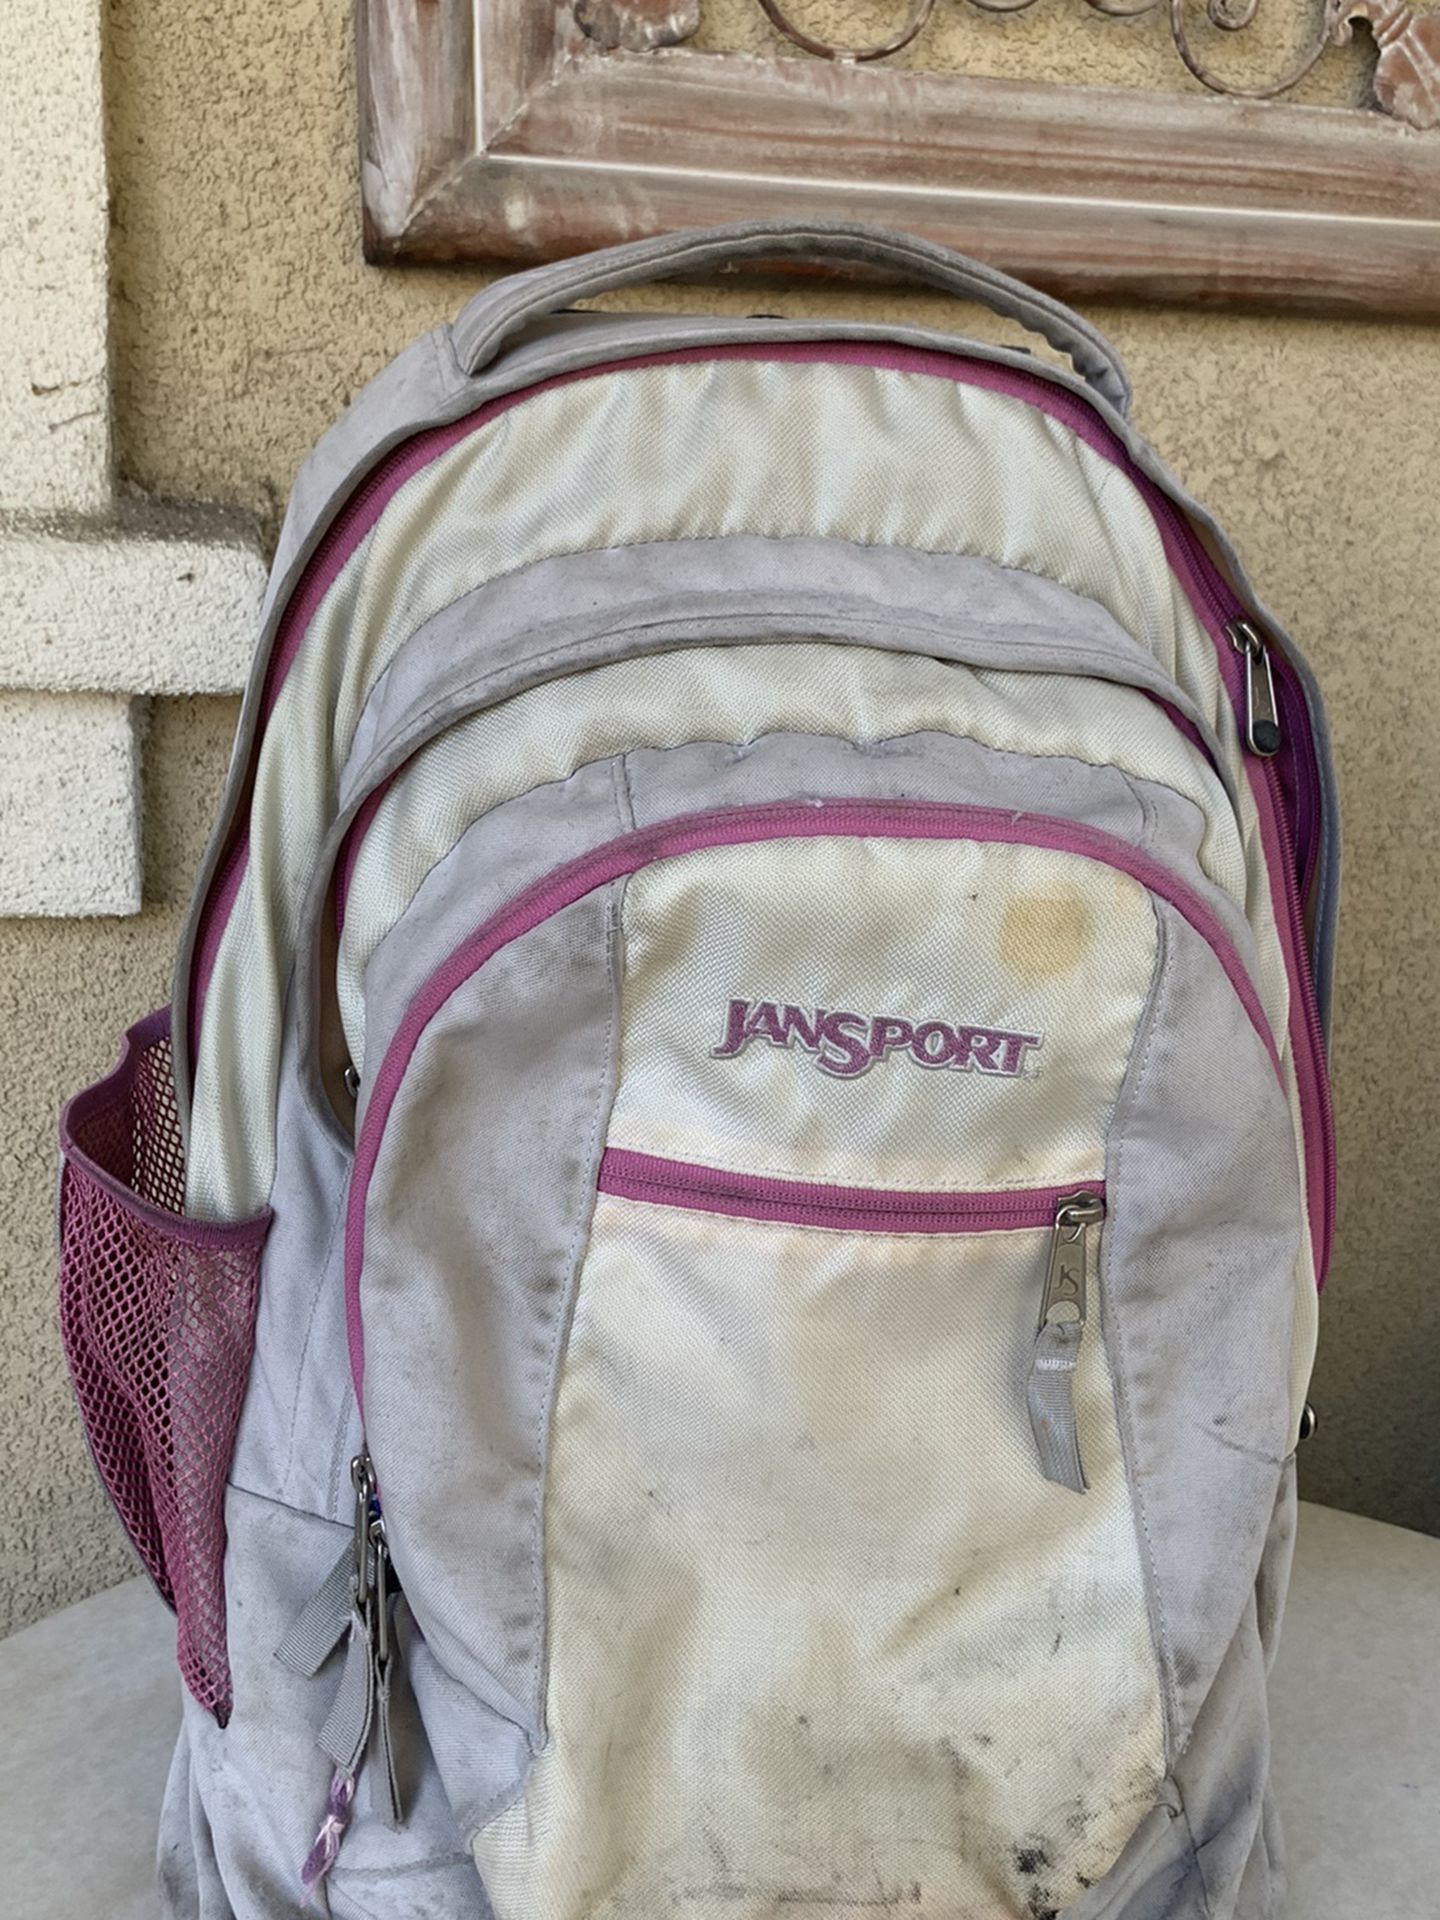 Jansport roller backpack